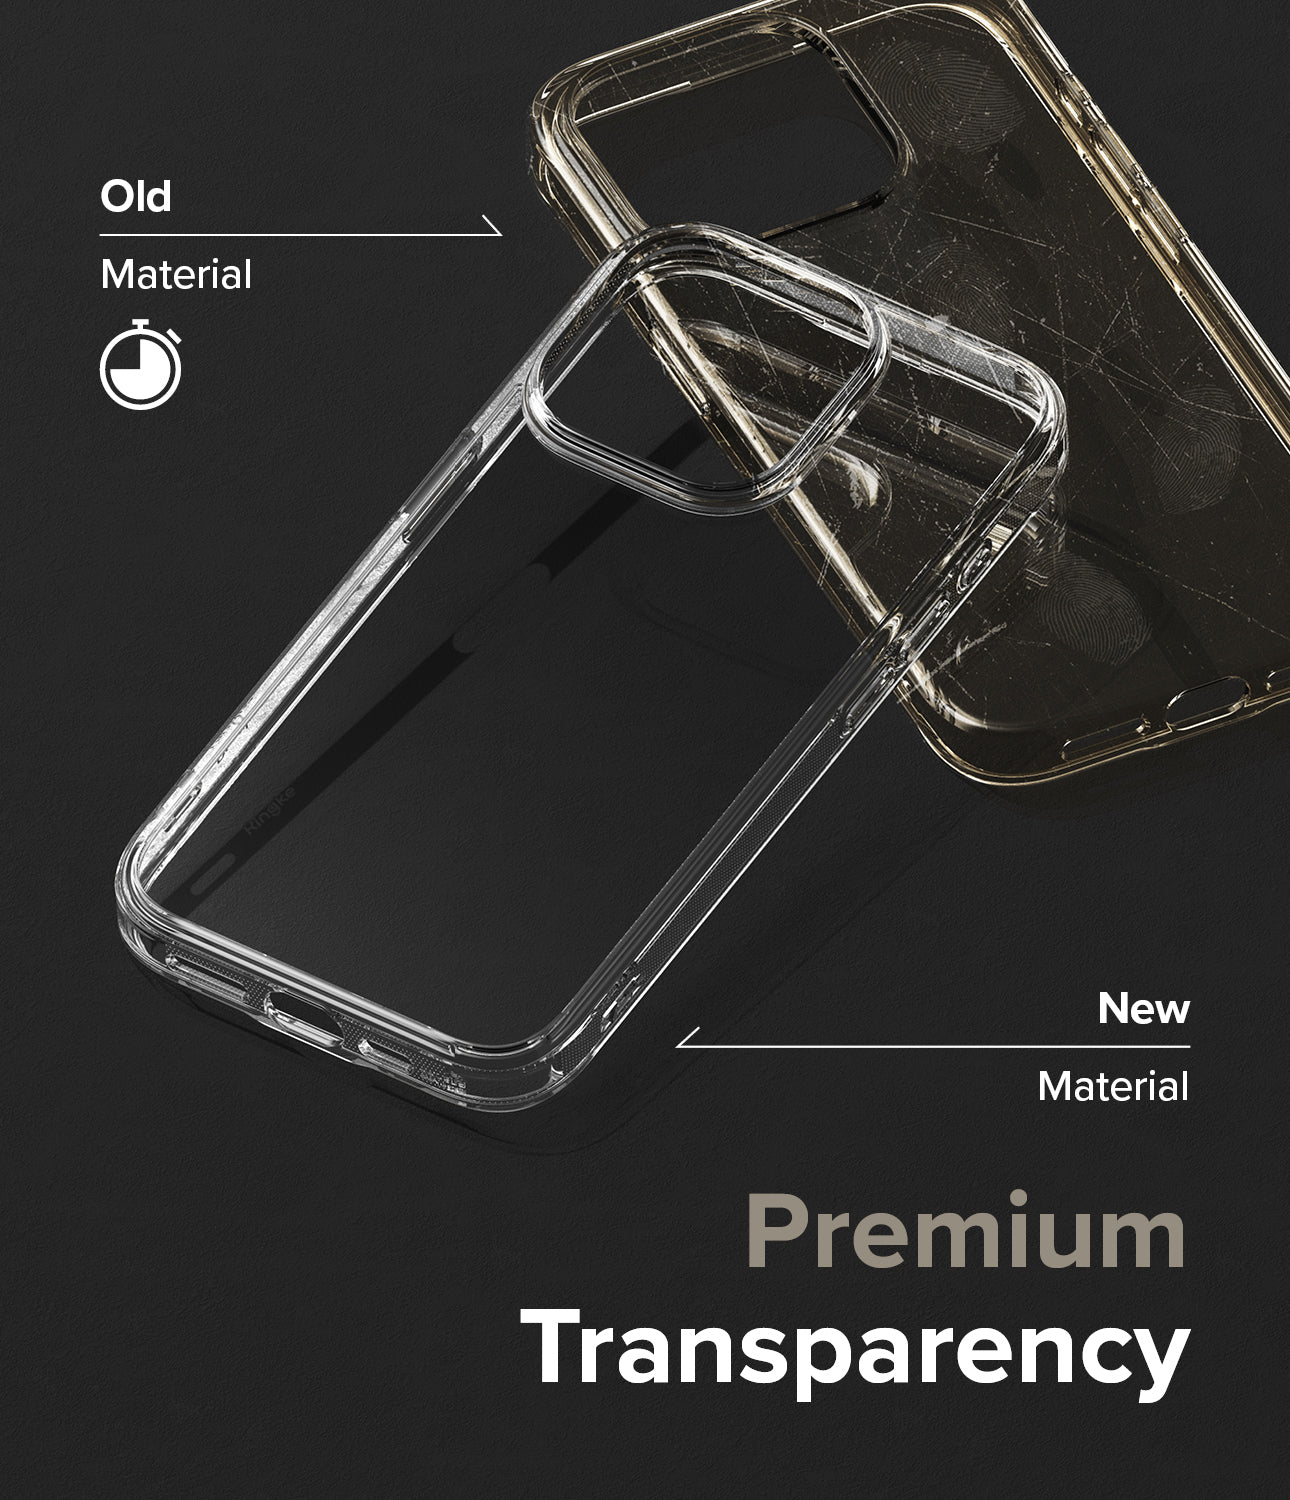 iPhone 15 Pro Max Case | Fusion